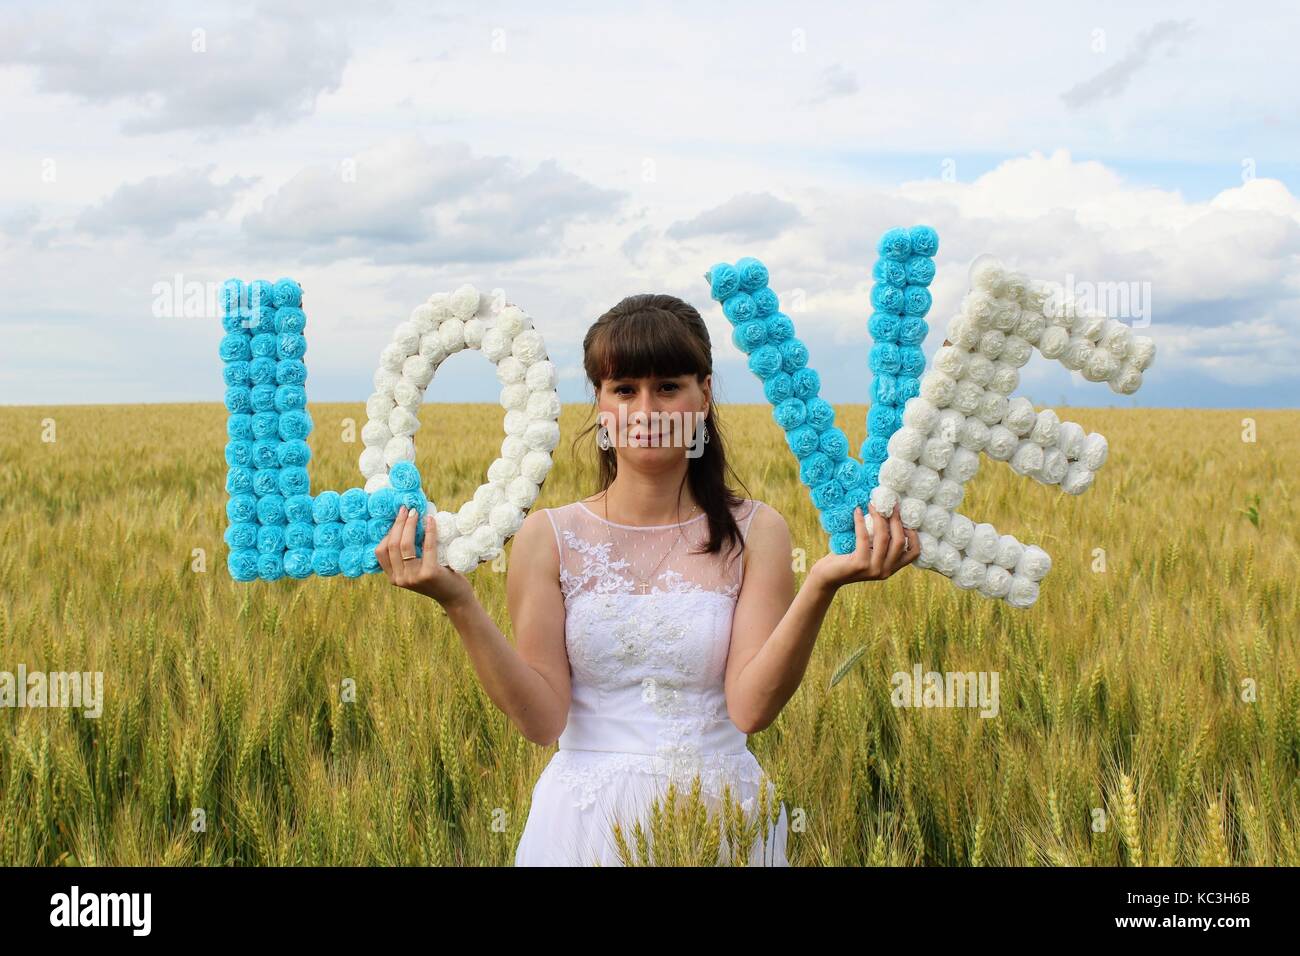 Una chica en un vestido de novia es la celebración de las letras 'amor' de pie contra un campo de trigo y cielo azul. Foto de stock